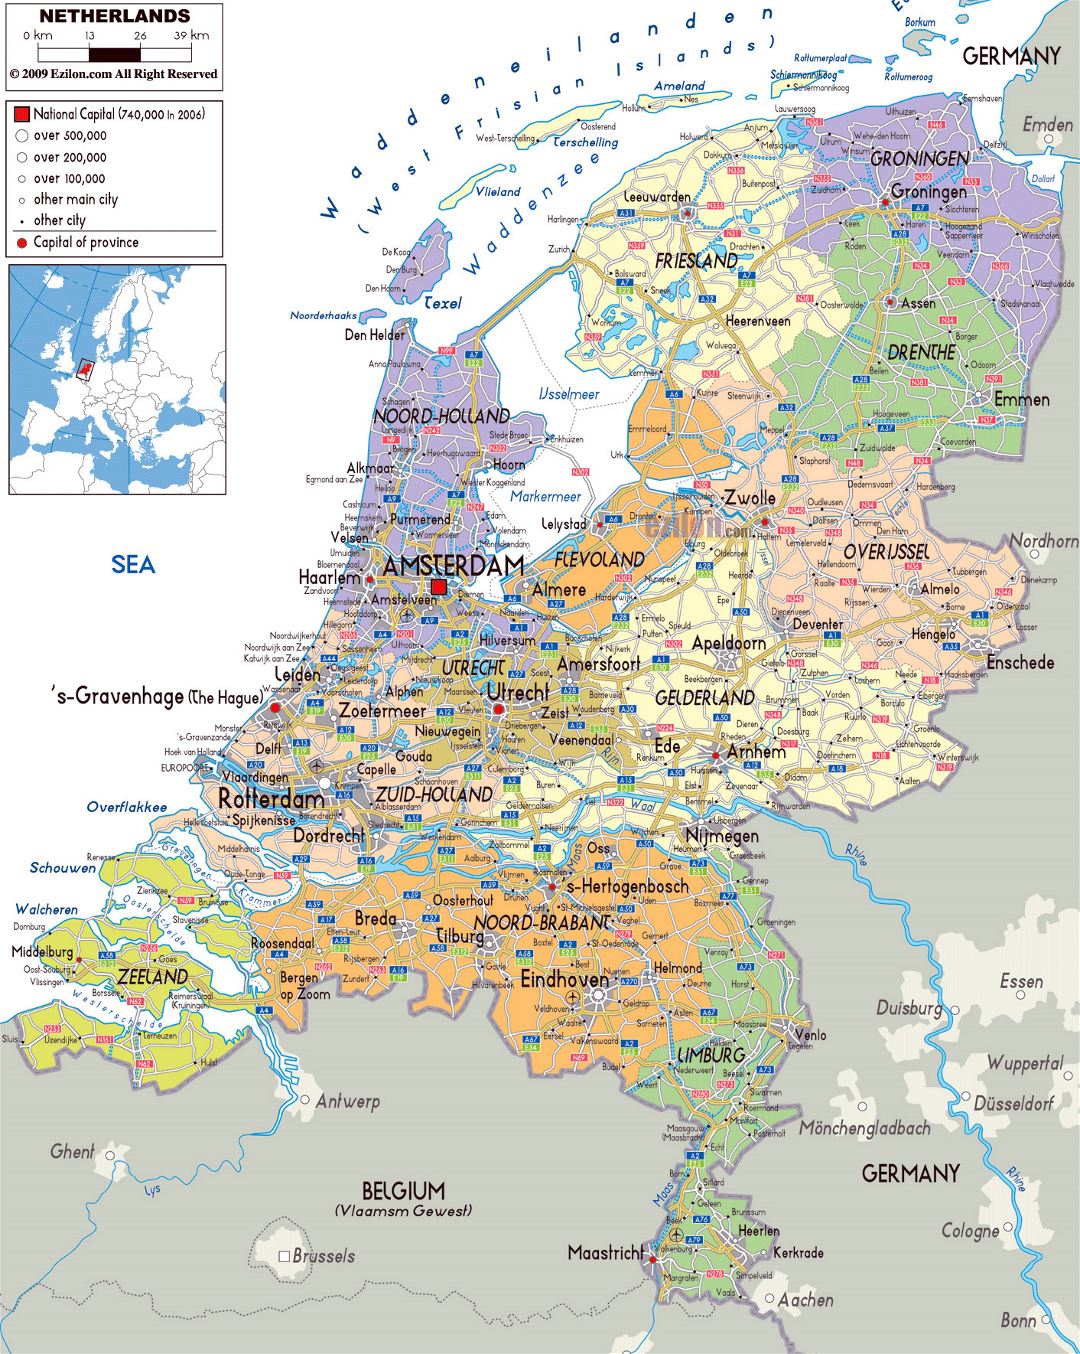 Grande mapa político y administrativo de Holanda con carreteras, ciudades y aeropuertos